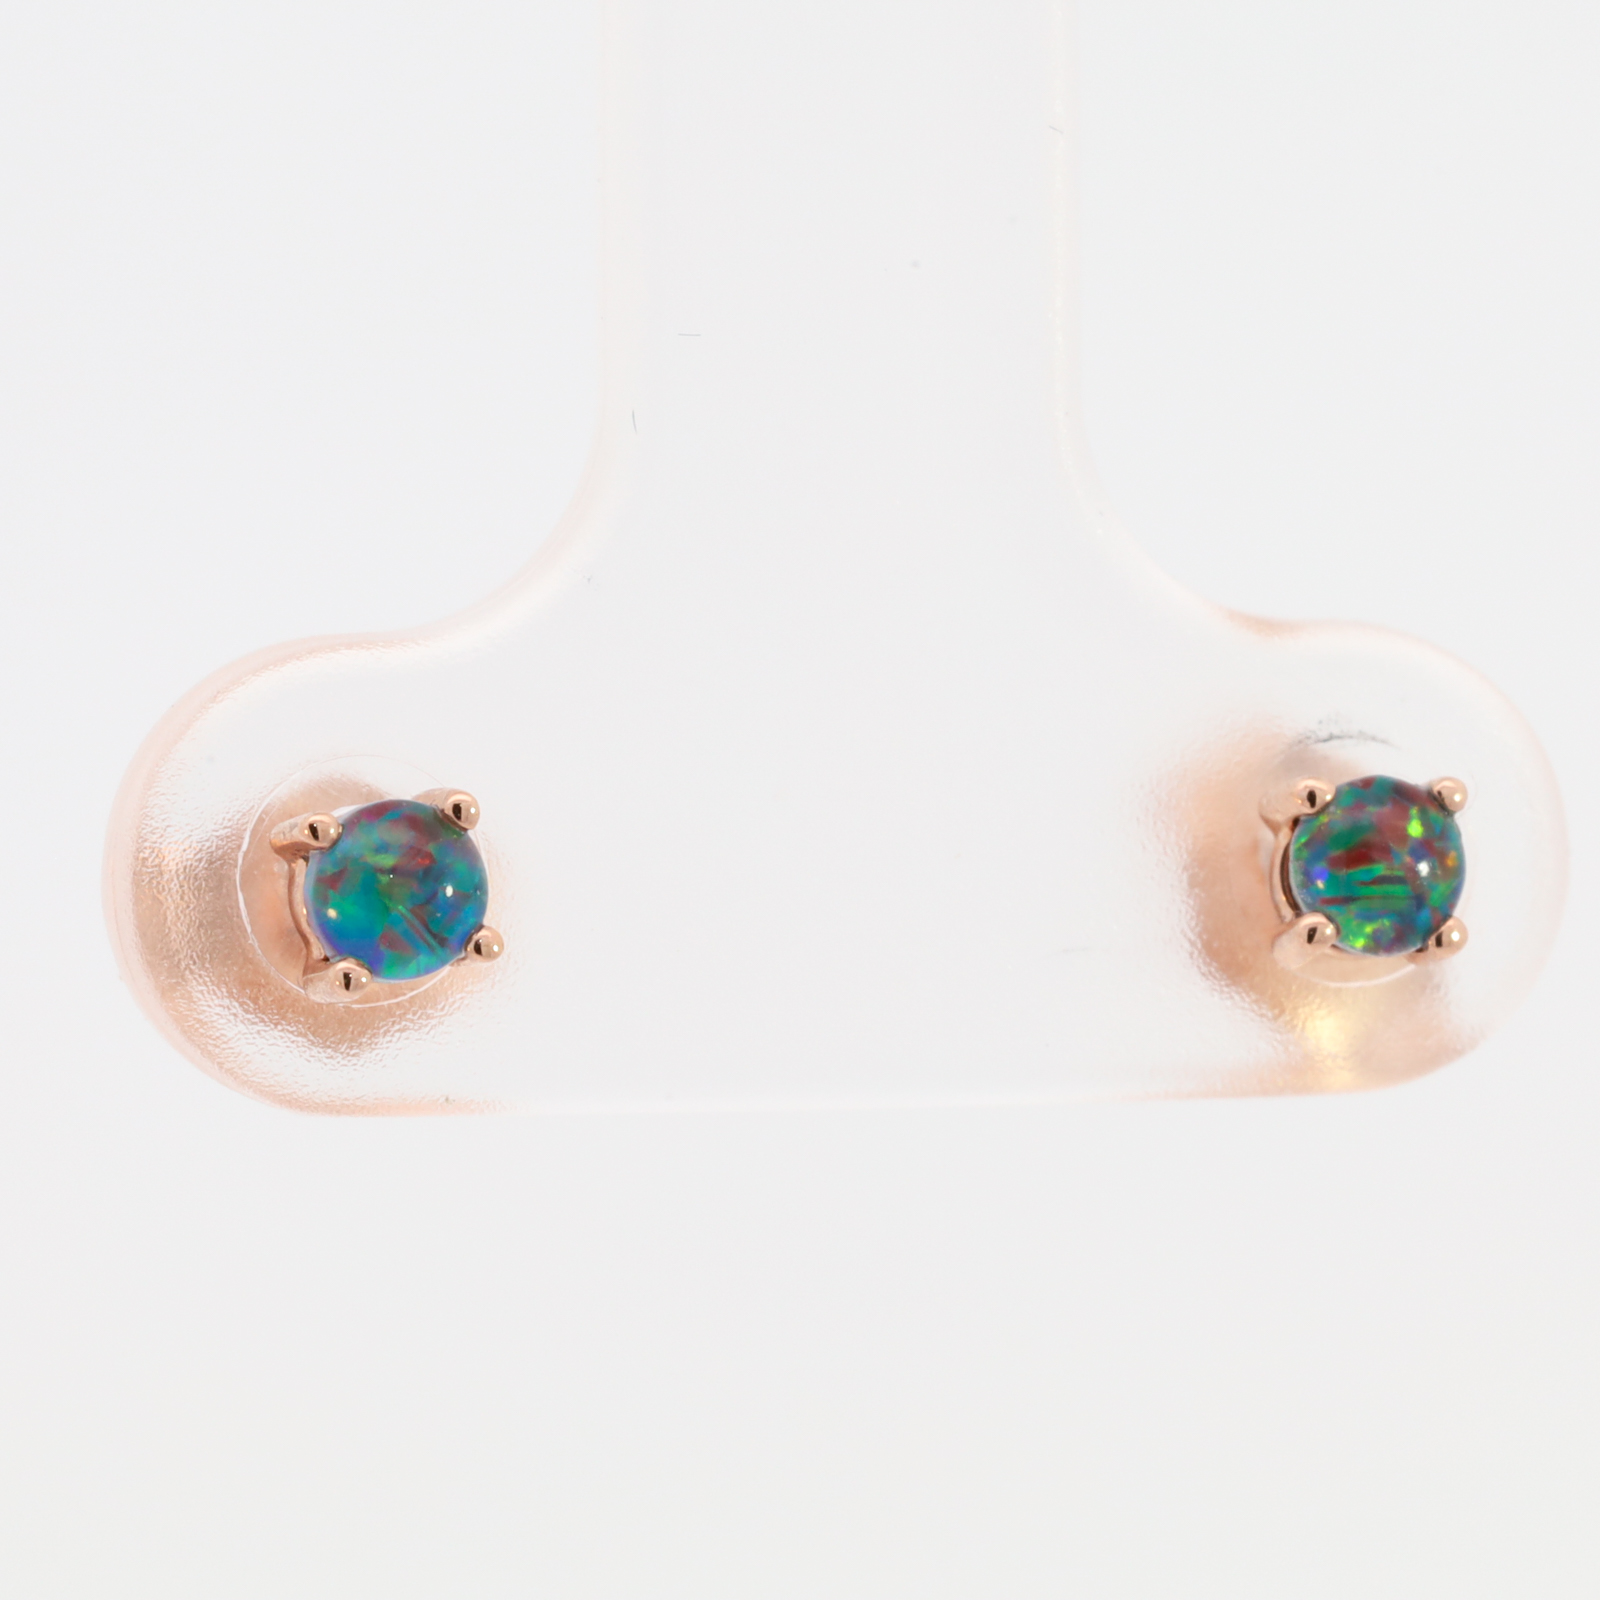 Red Blue Rose Gold Australian Triplet Opal Stud Earrings